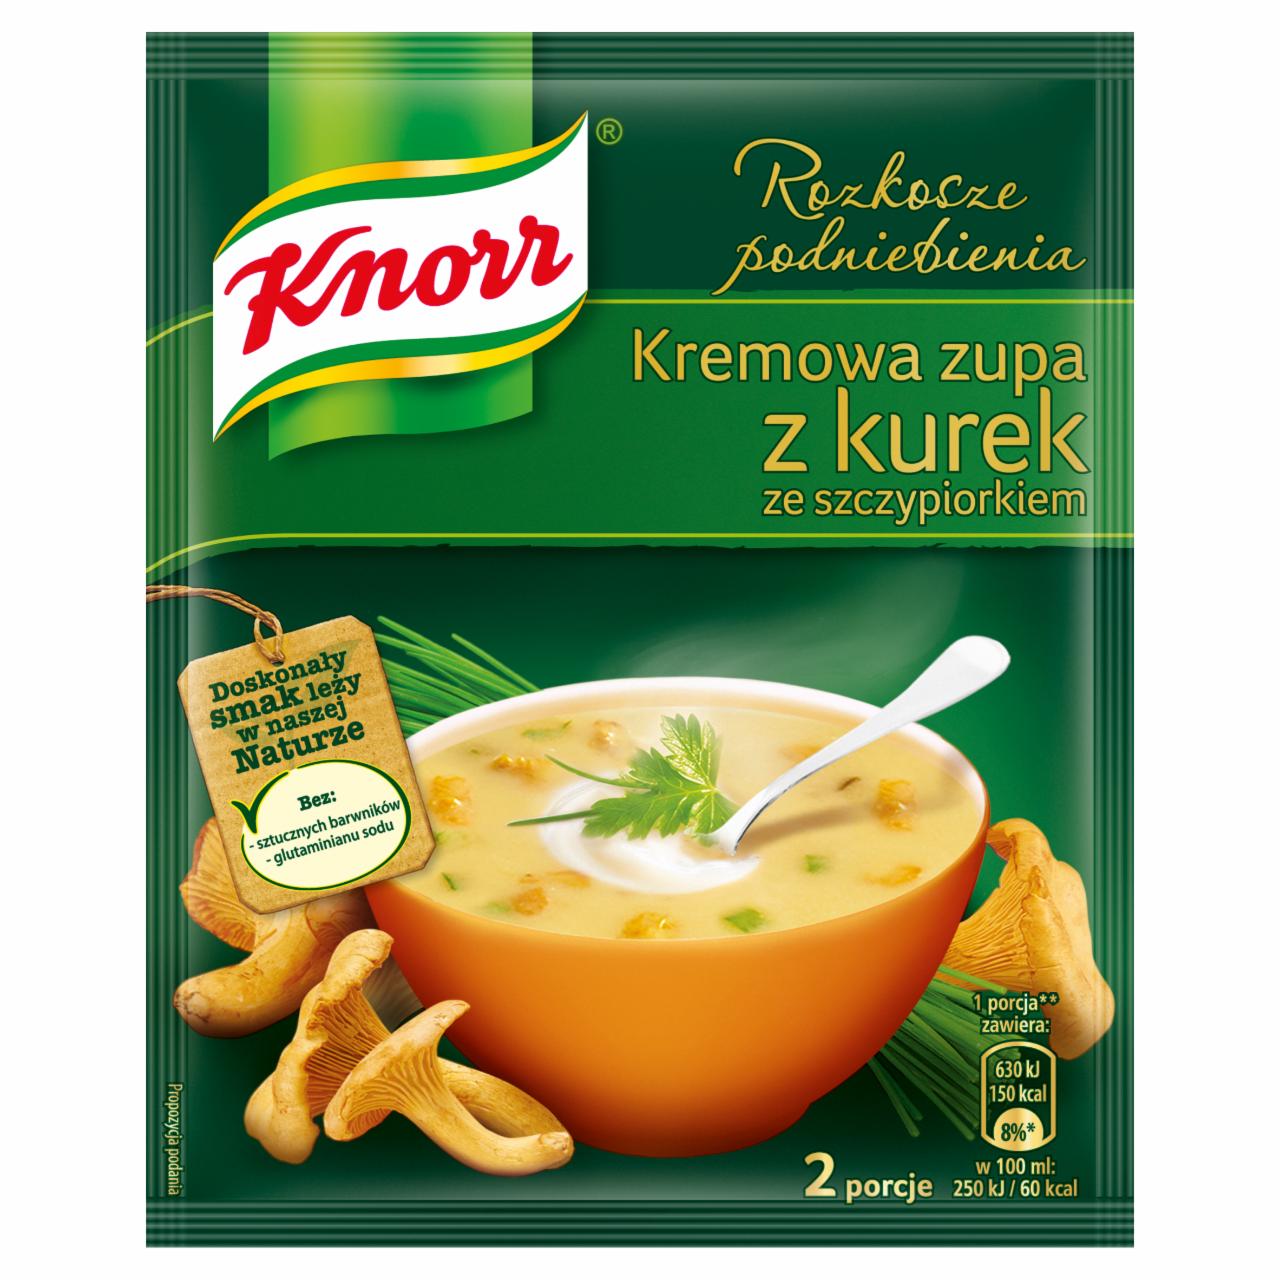 Zdjęcia - Rozkosze podniebienia Kremowa zupa z kurek ze szczypiorkiem Knorr